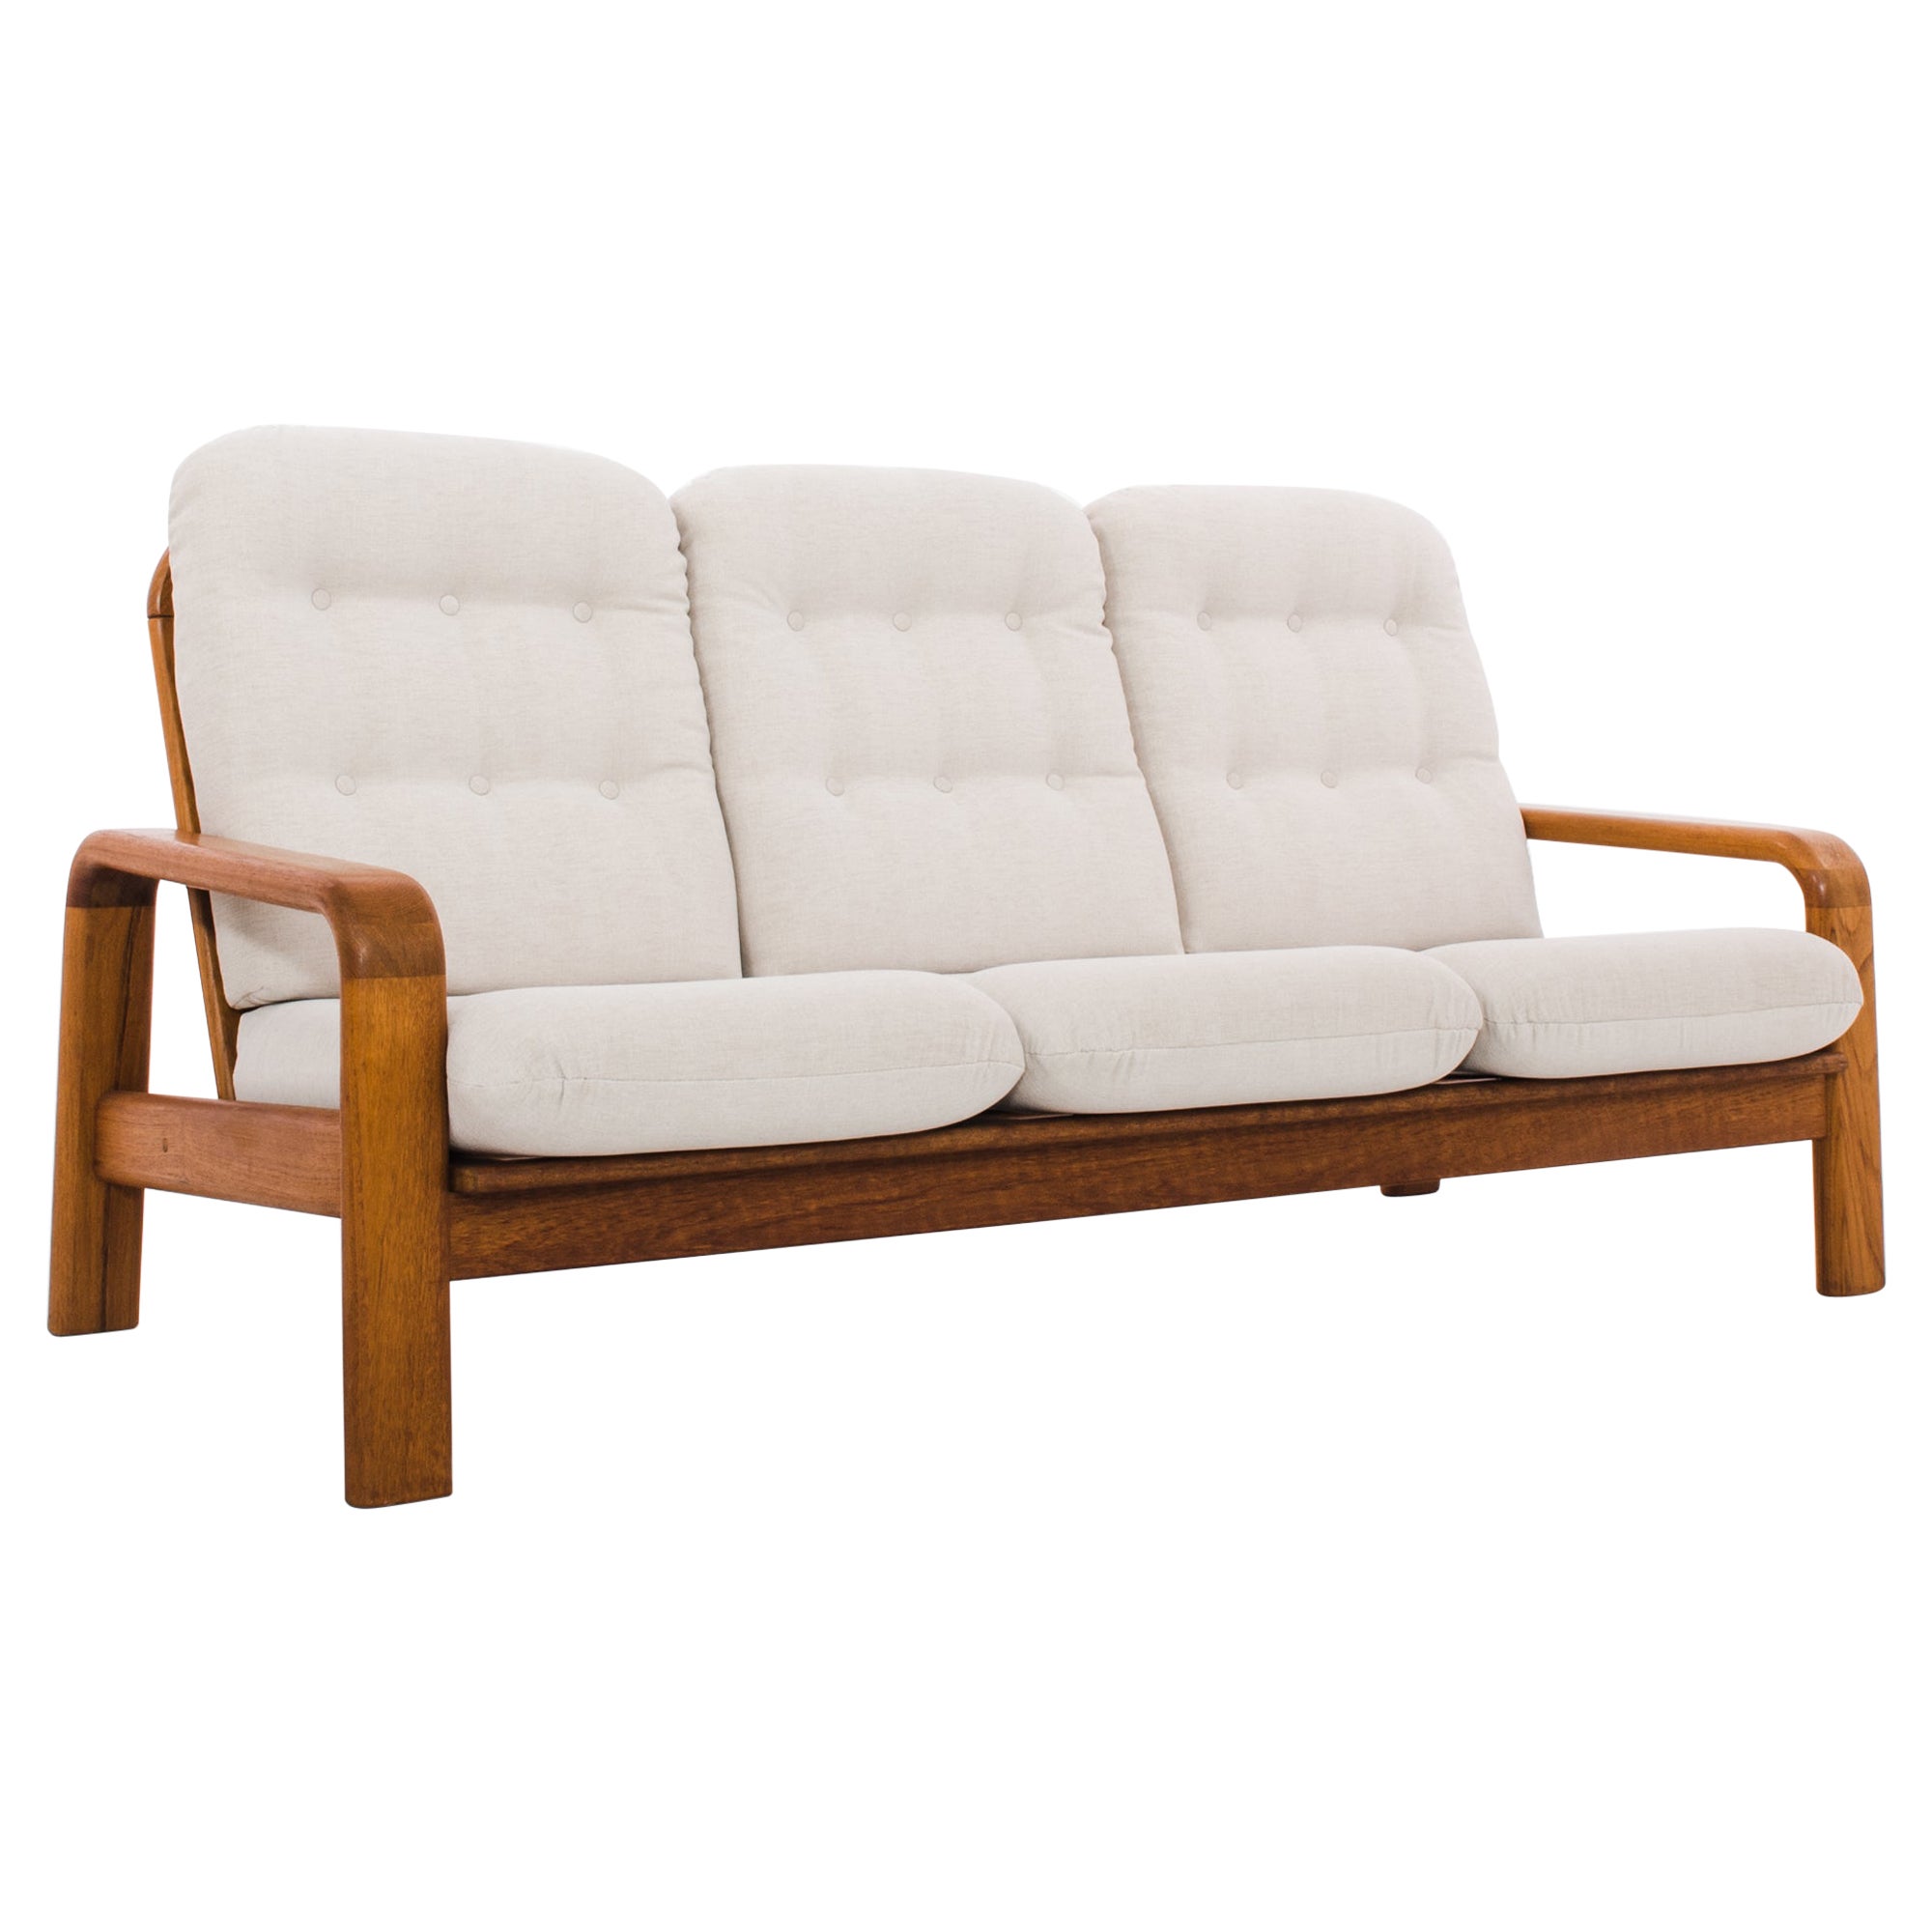 1960s Danish Teak Upholstered Sofa